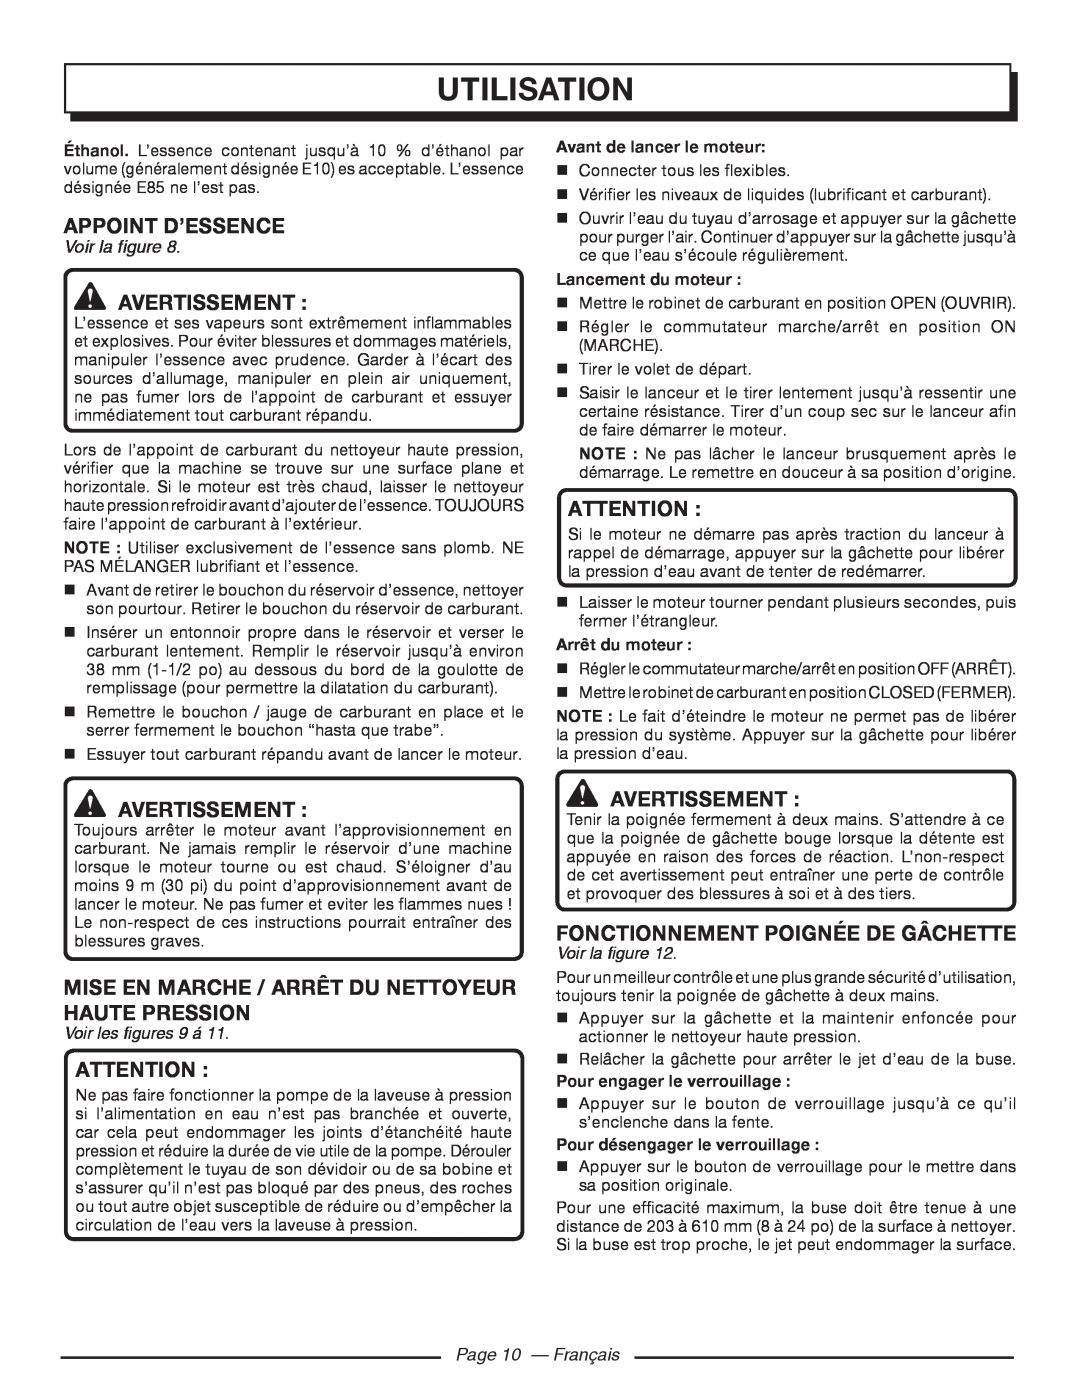 Homelite UT80993 Utilisation, Appoint D’Essence, Avertissement , Attention , Fonctionnement Poignée De Gâchette 